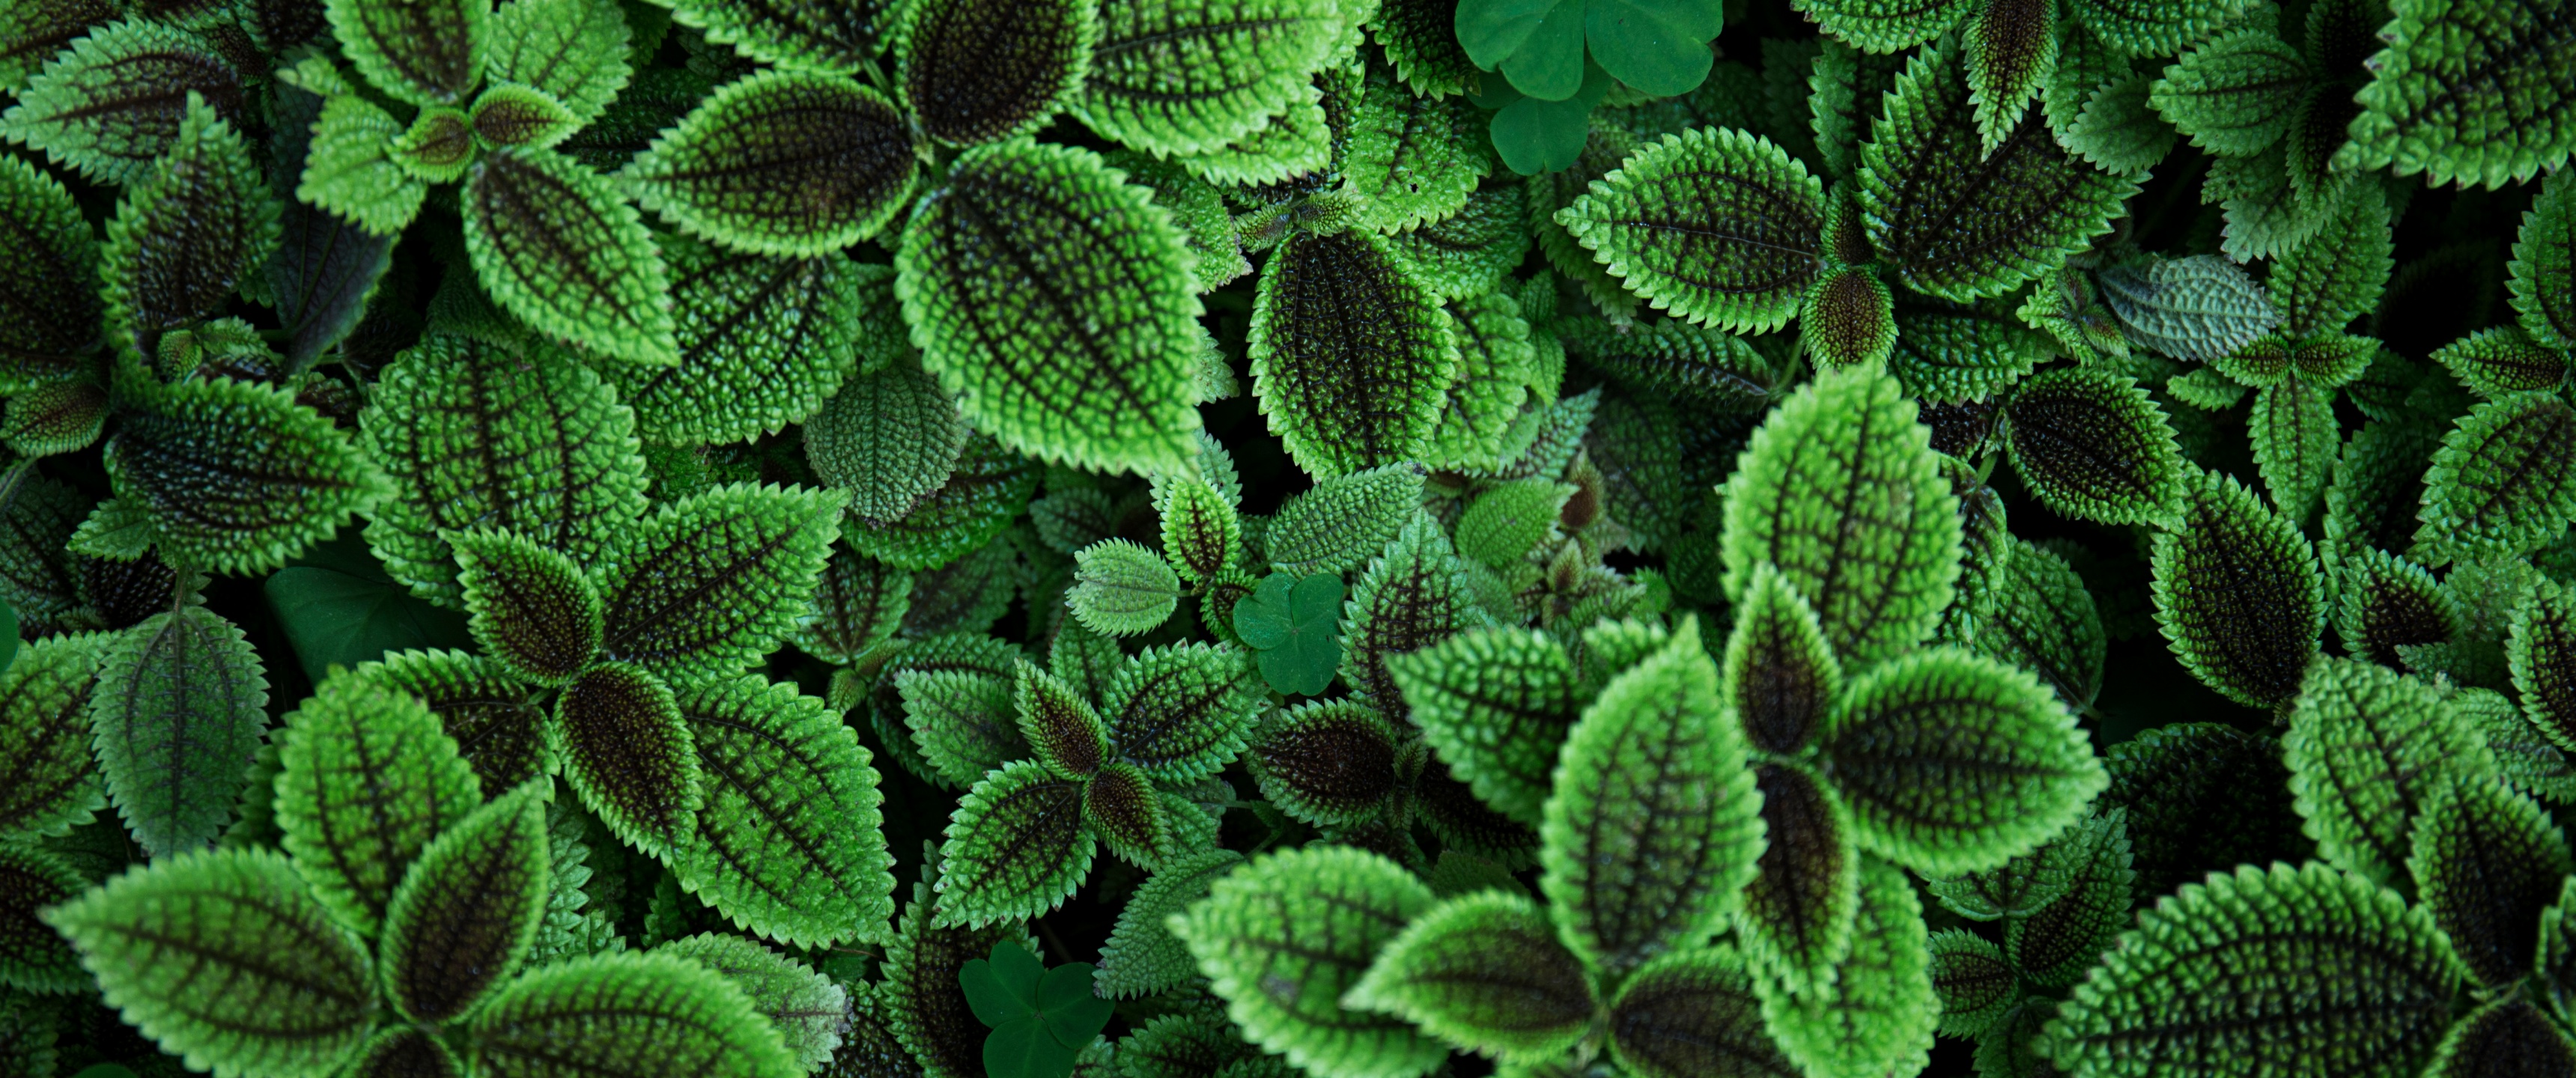 Green leaves Wallpaper 4K, Plant, Aesthetic, 5K, Nature, #3559